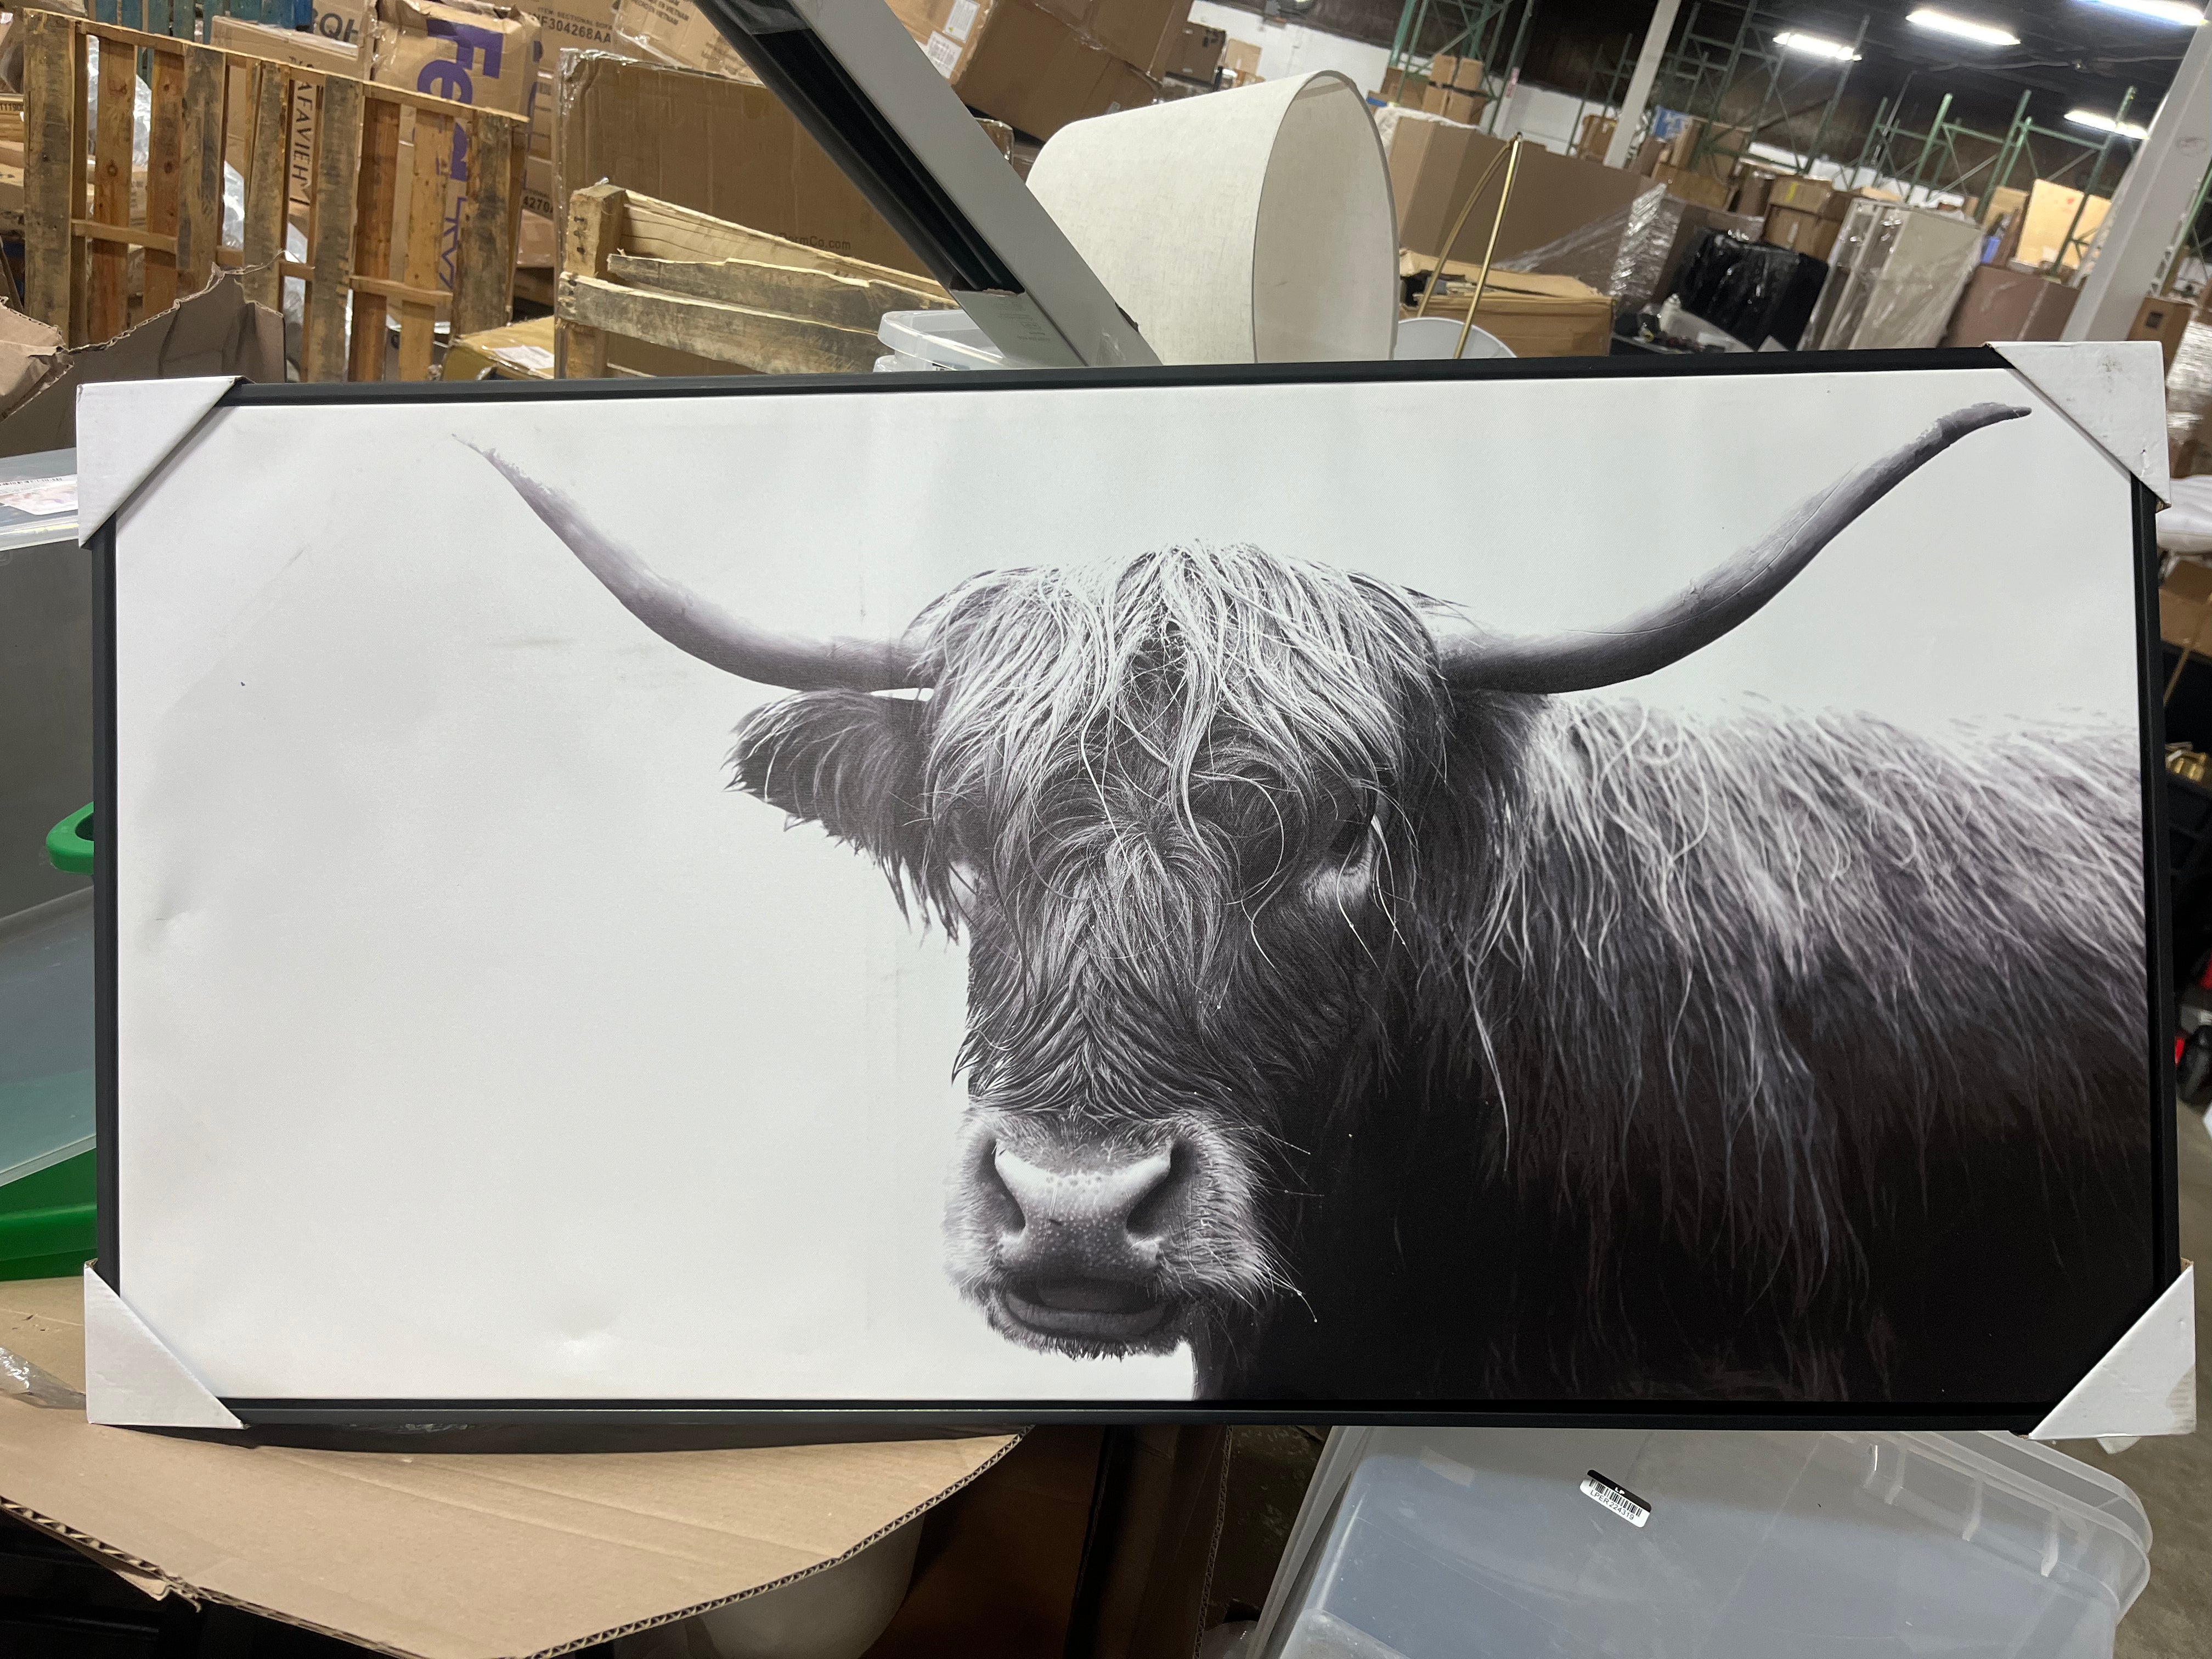 Highland Cow Framed Canvas